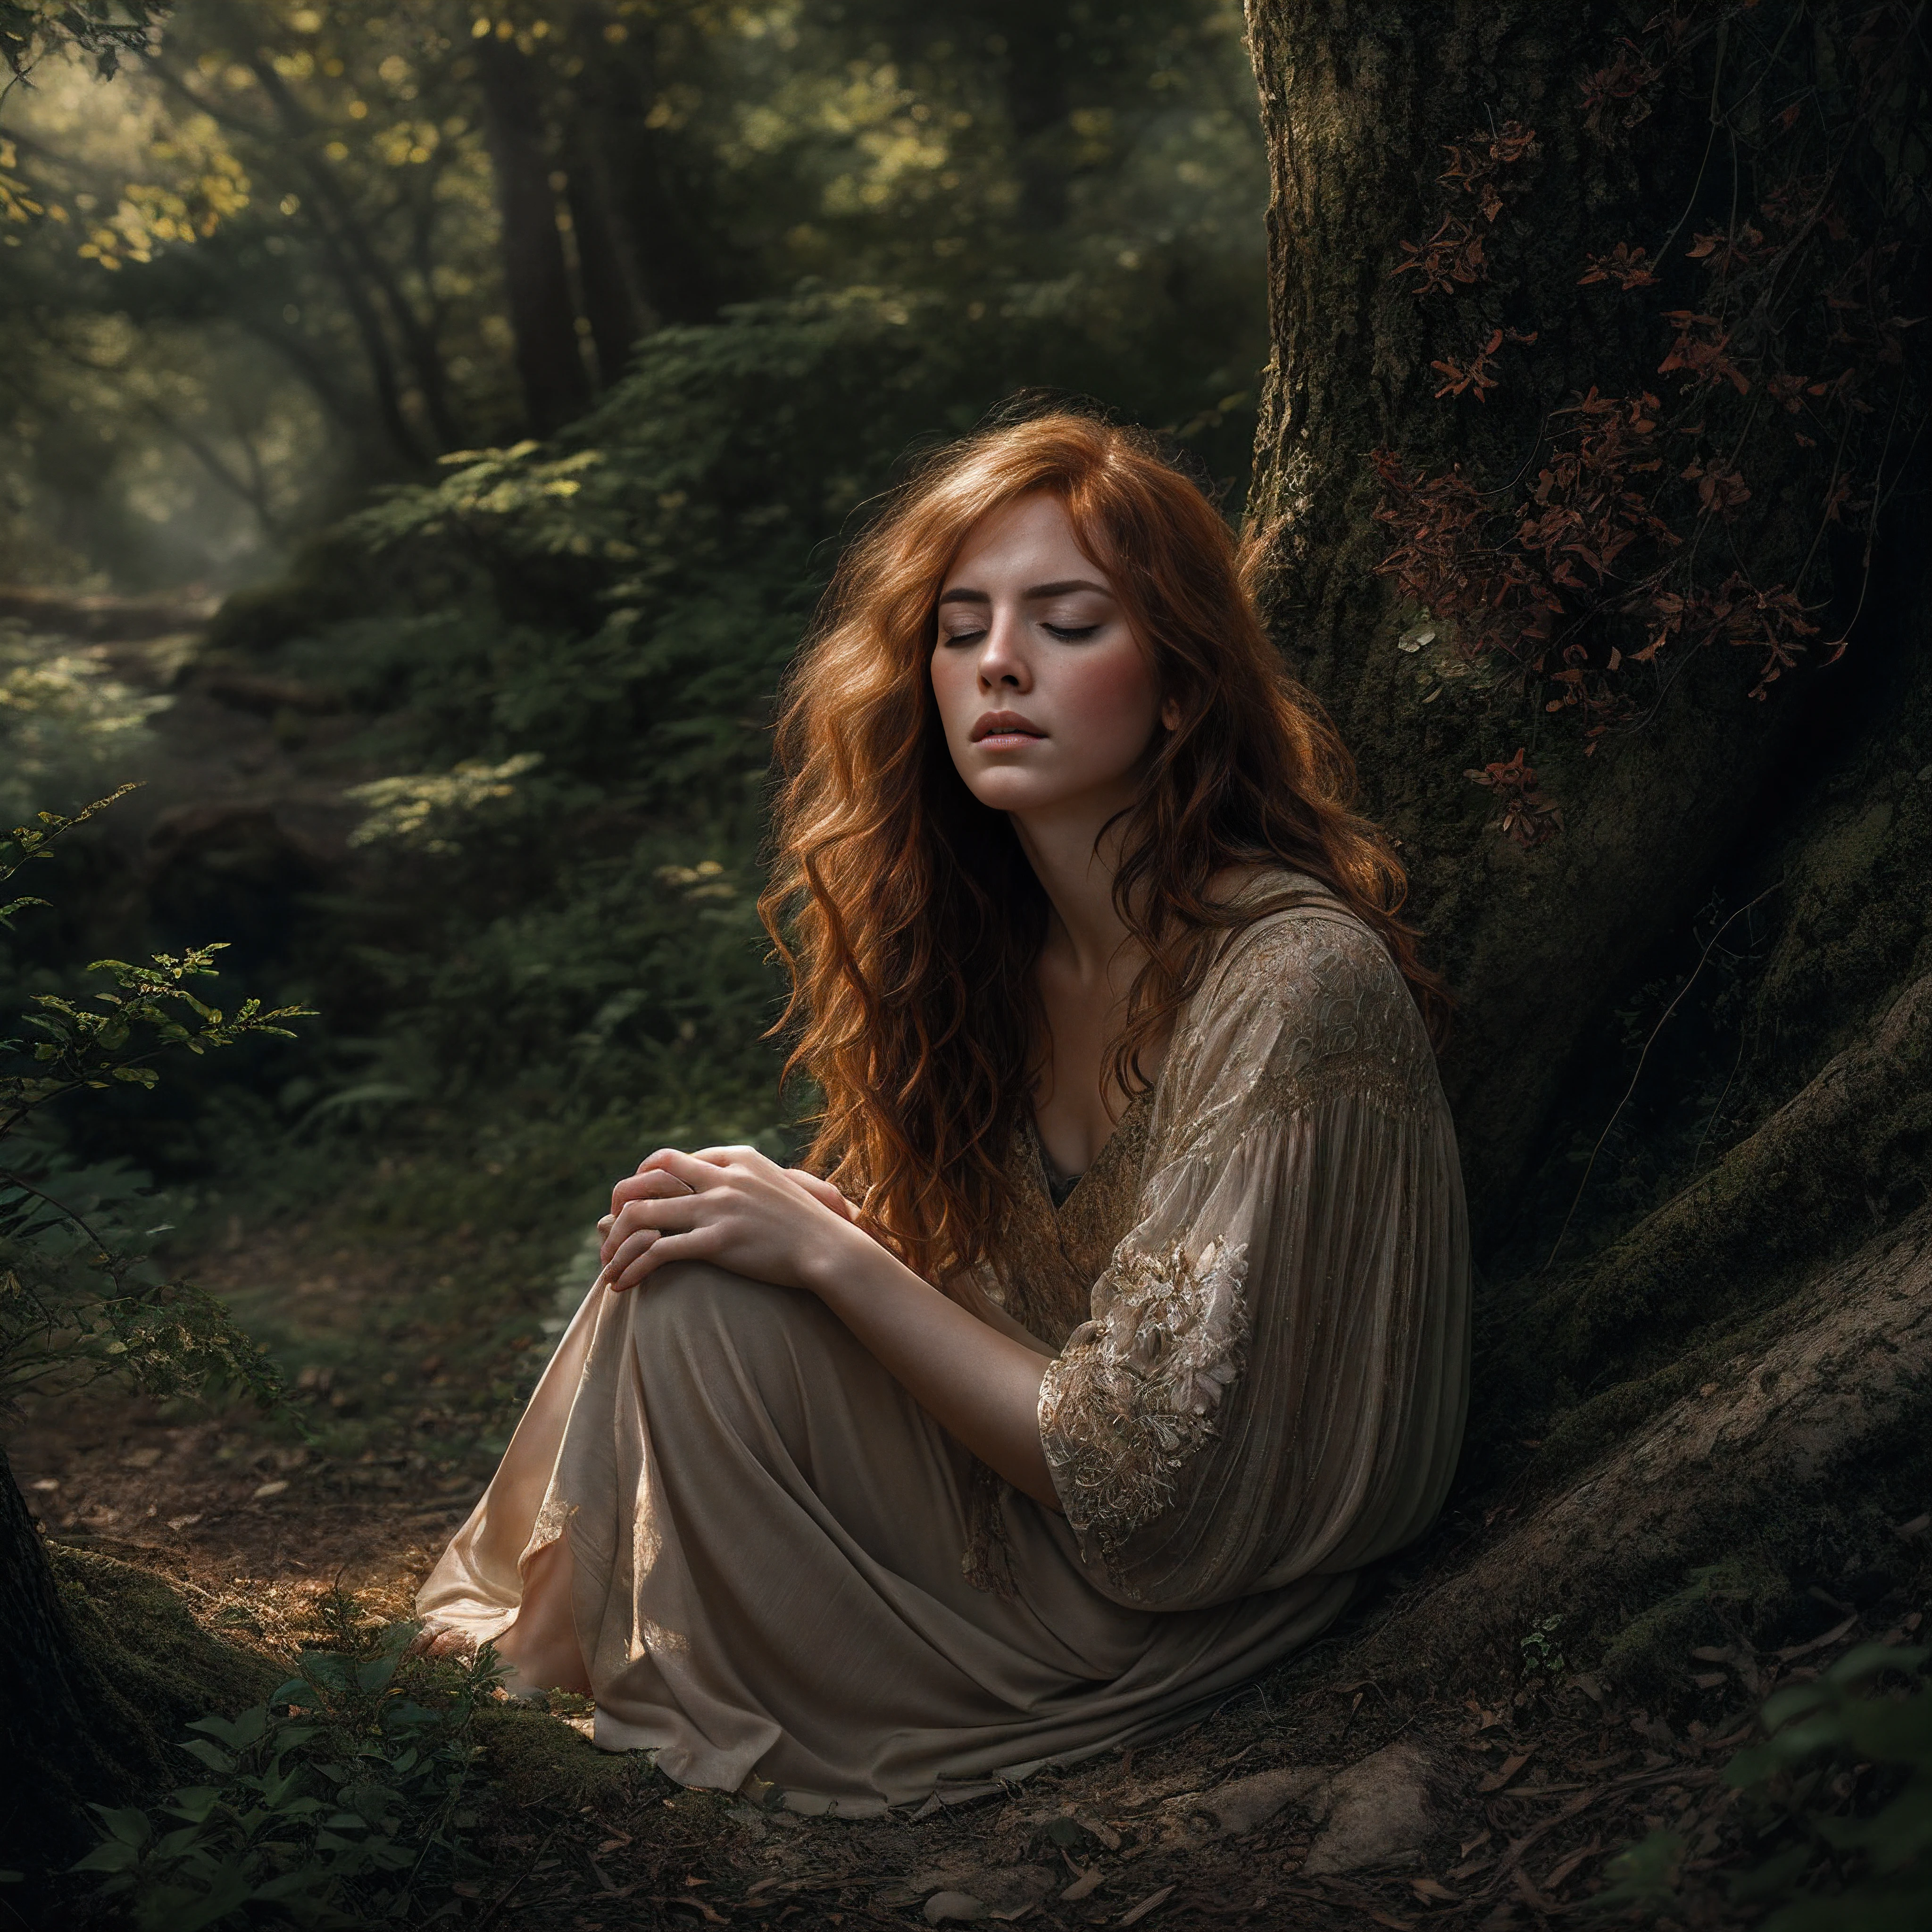 Ein exquisites Porträt, das eine schöne rothaarige Frau zeigt, die friedlich in einem alten Waldtal kniet, Augen geschlossen in nachdenklichen Gedanken, zarte Gesichtszüge, gesprenkeltes Sonnenlicht streichelt, makellose Haut, geschmückt mit bezaubernden Sommersprossen, feurige Locken wehen sanft in der Waldbrise, meisterhaft komponiert im Stil eines Fine Art Fotodrucks, tonalitätsreich und atmosphärisch stimmungsvoll wie ein filmisches Standbild, komplexe Texturen und Filmkörnung nahtlos integriert, Die handwerkliche Gesamtarbeit ist hervorragend ausgeführt, mit außergewöhnlicher Liebe zum Detail, Dieses tiefgründige digitale Gemälde verkörpert Fotorealismus und fantasievolle Kunstfertigkeit.